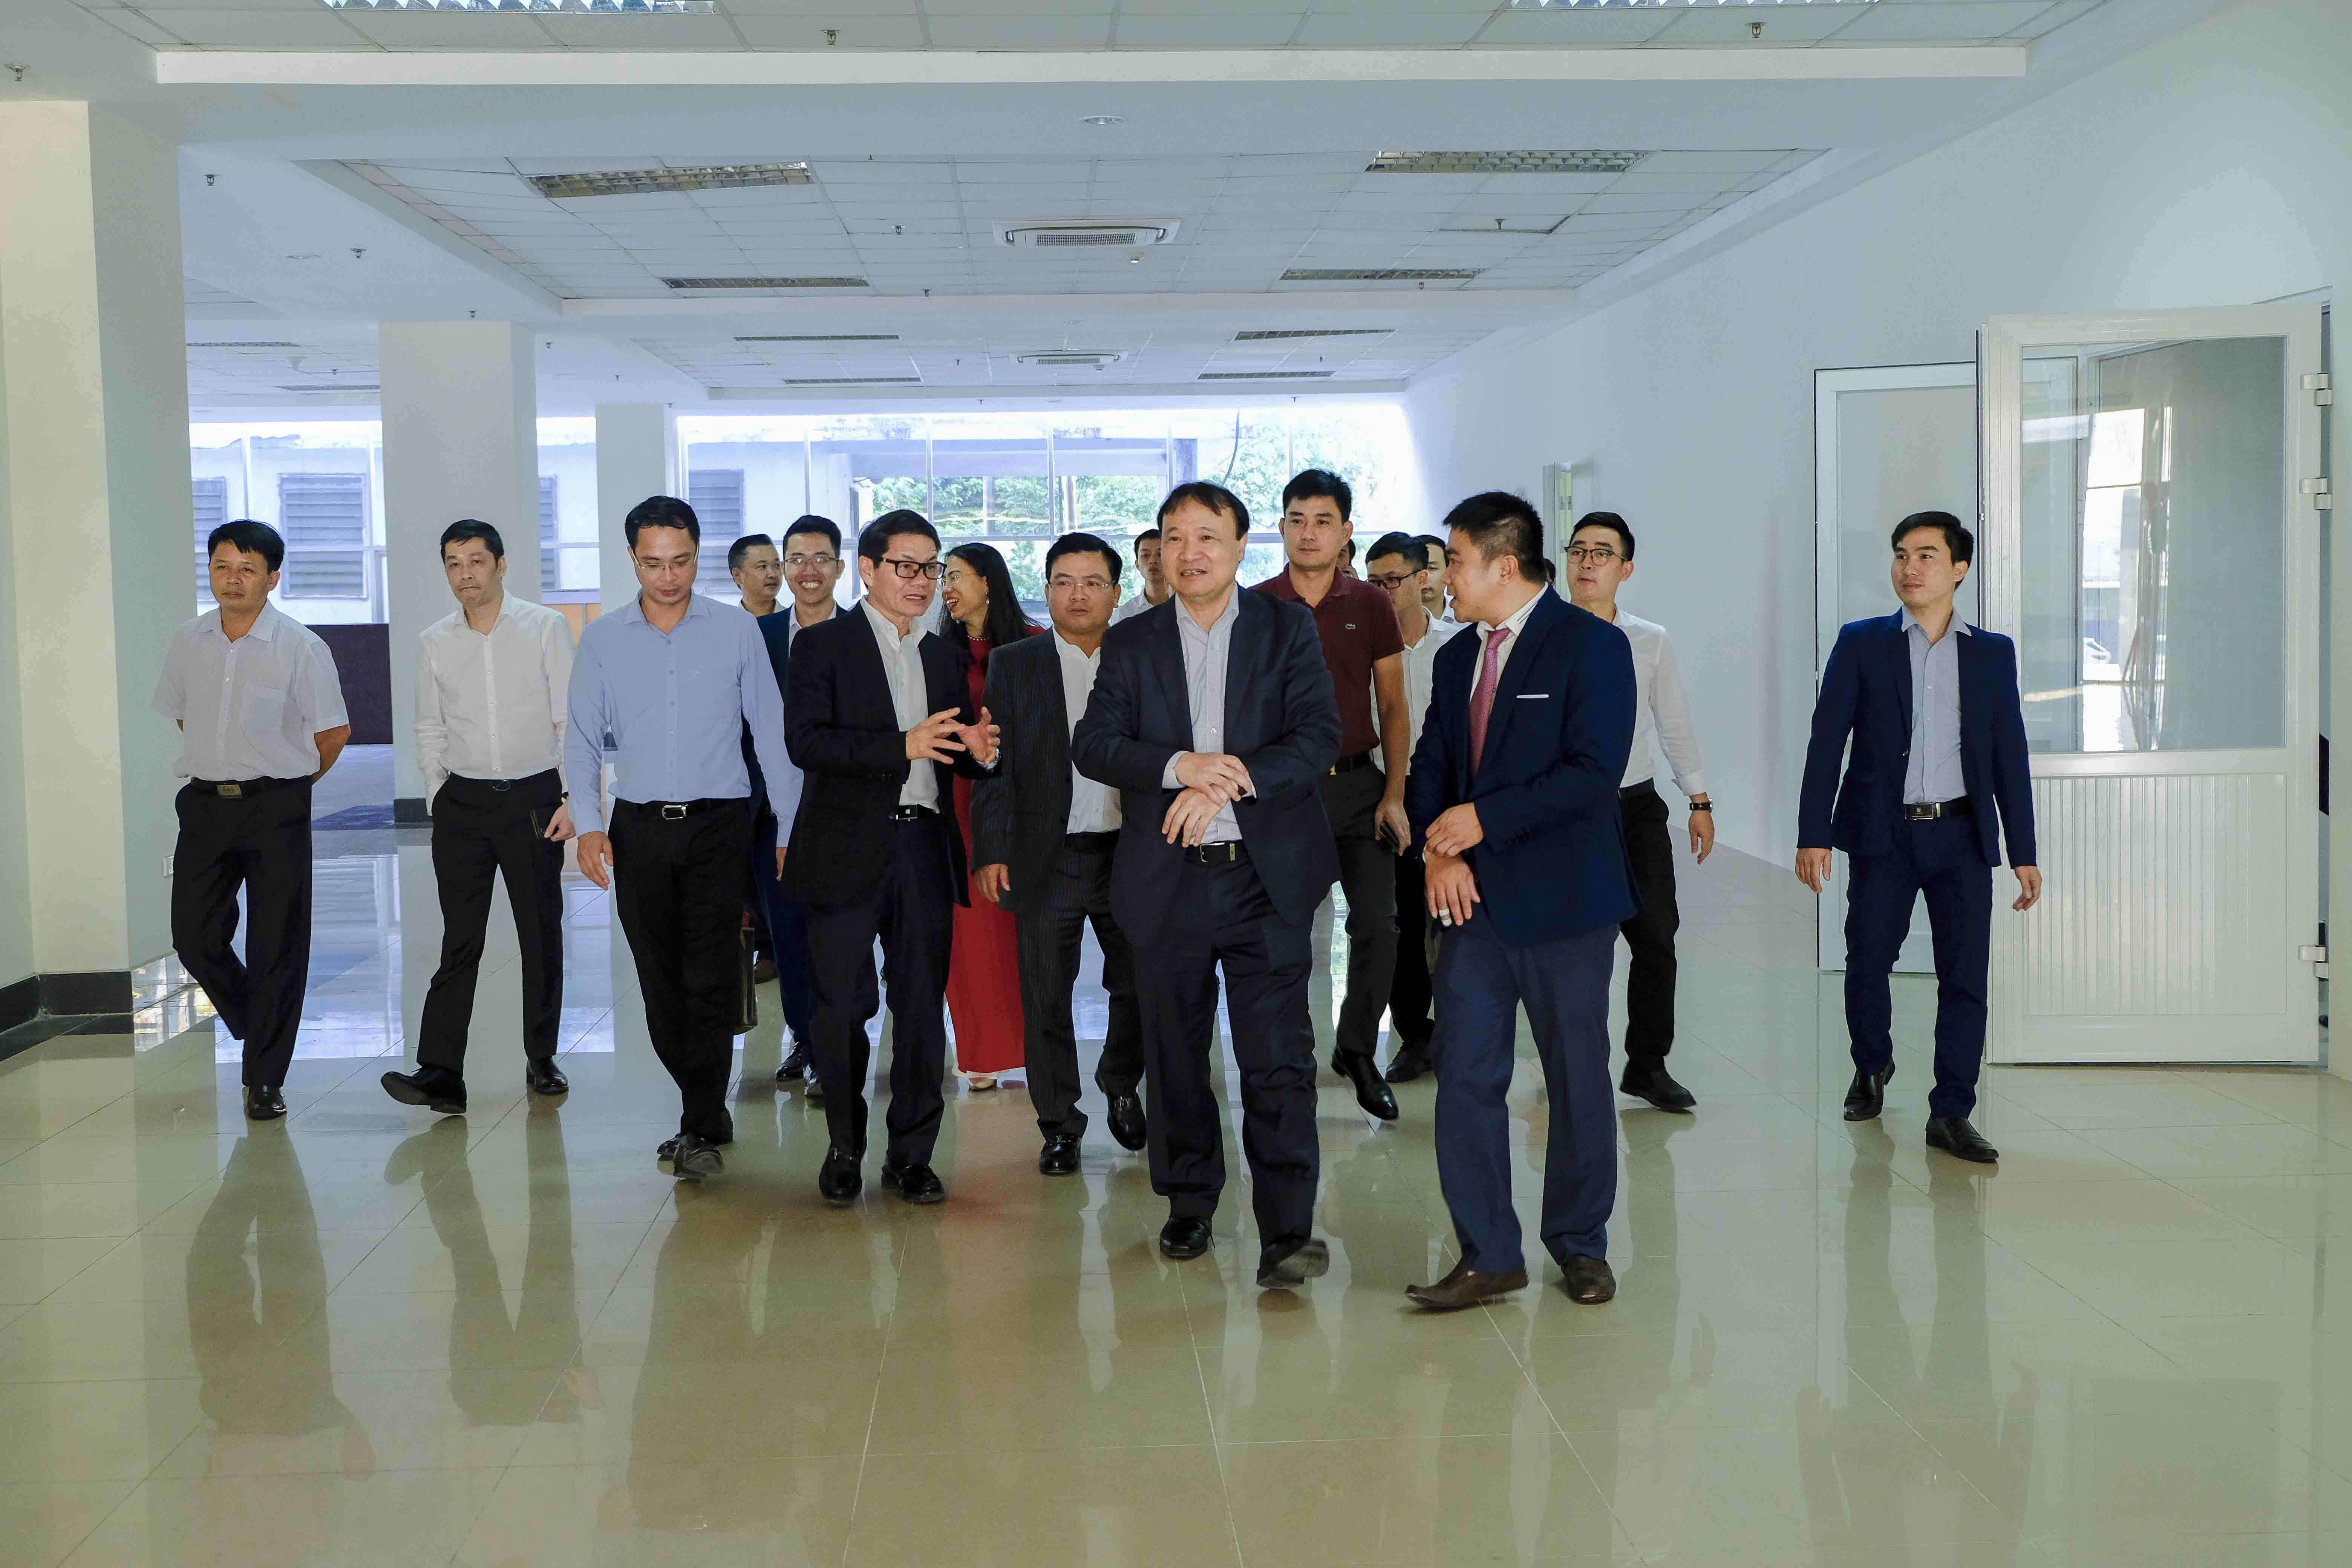 Khai trương Trung tâm hỗ trợ phát triển công nghiệp đầu tiên của Việt Nam